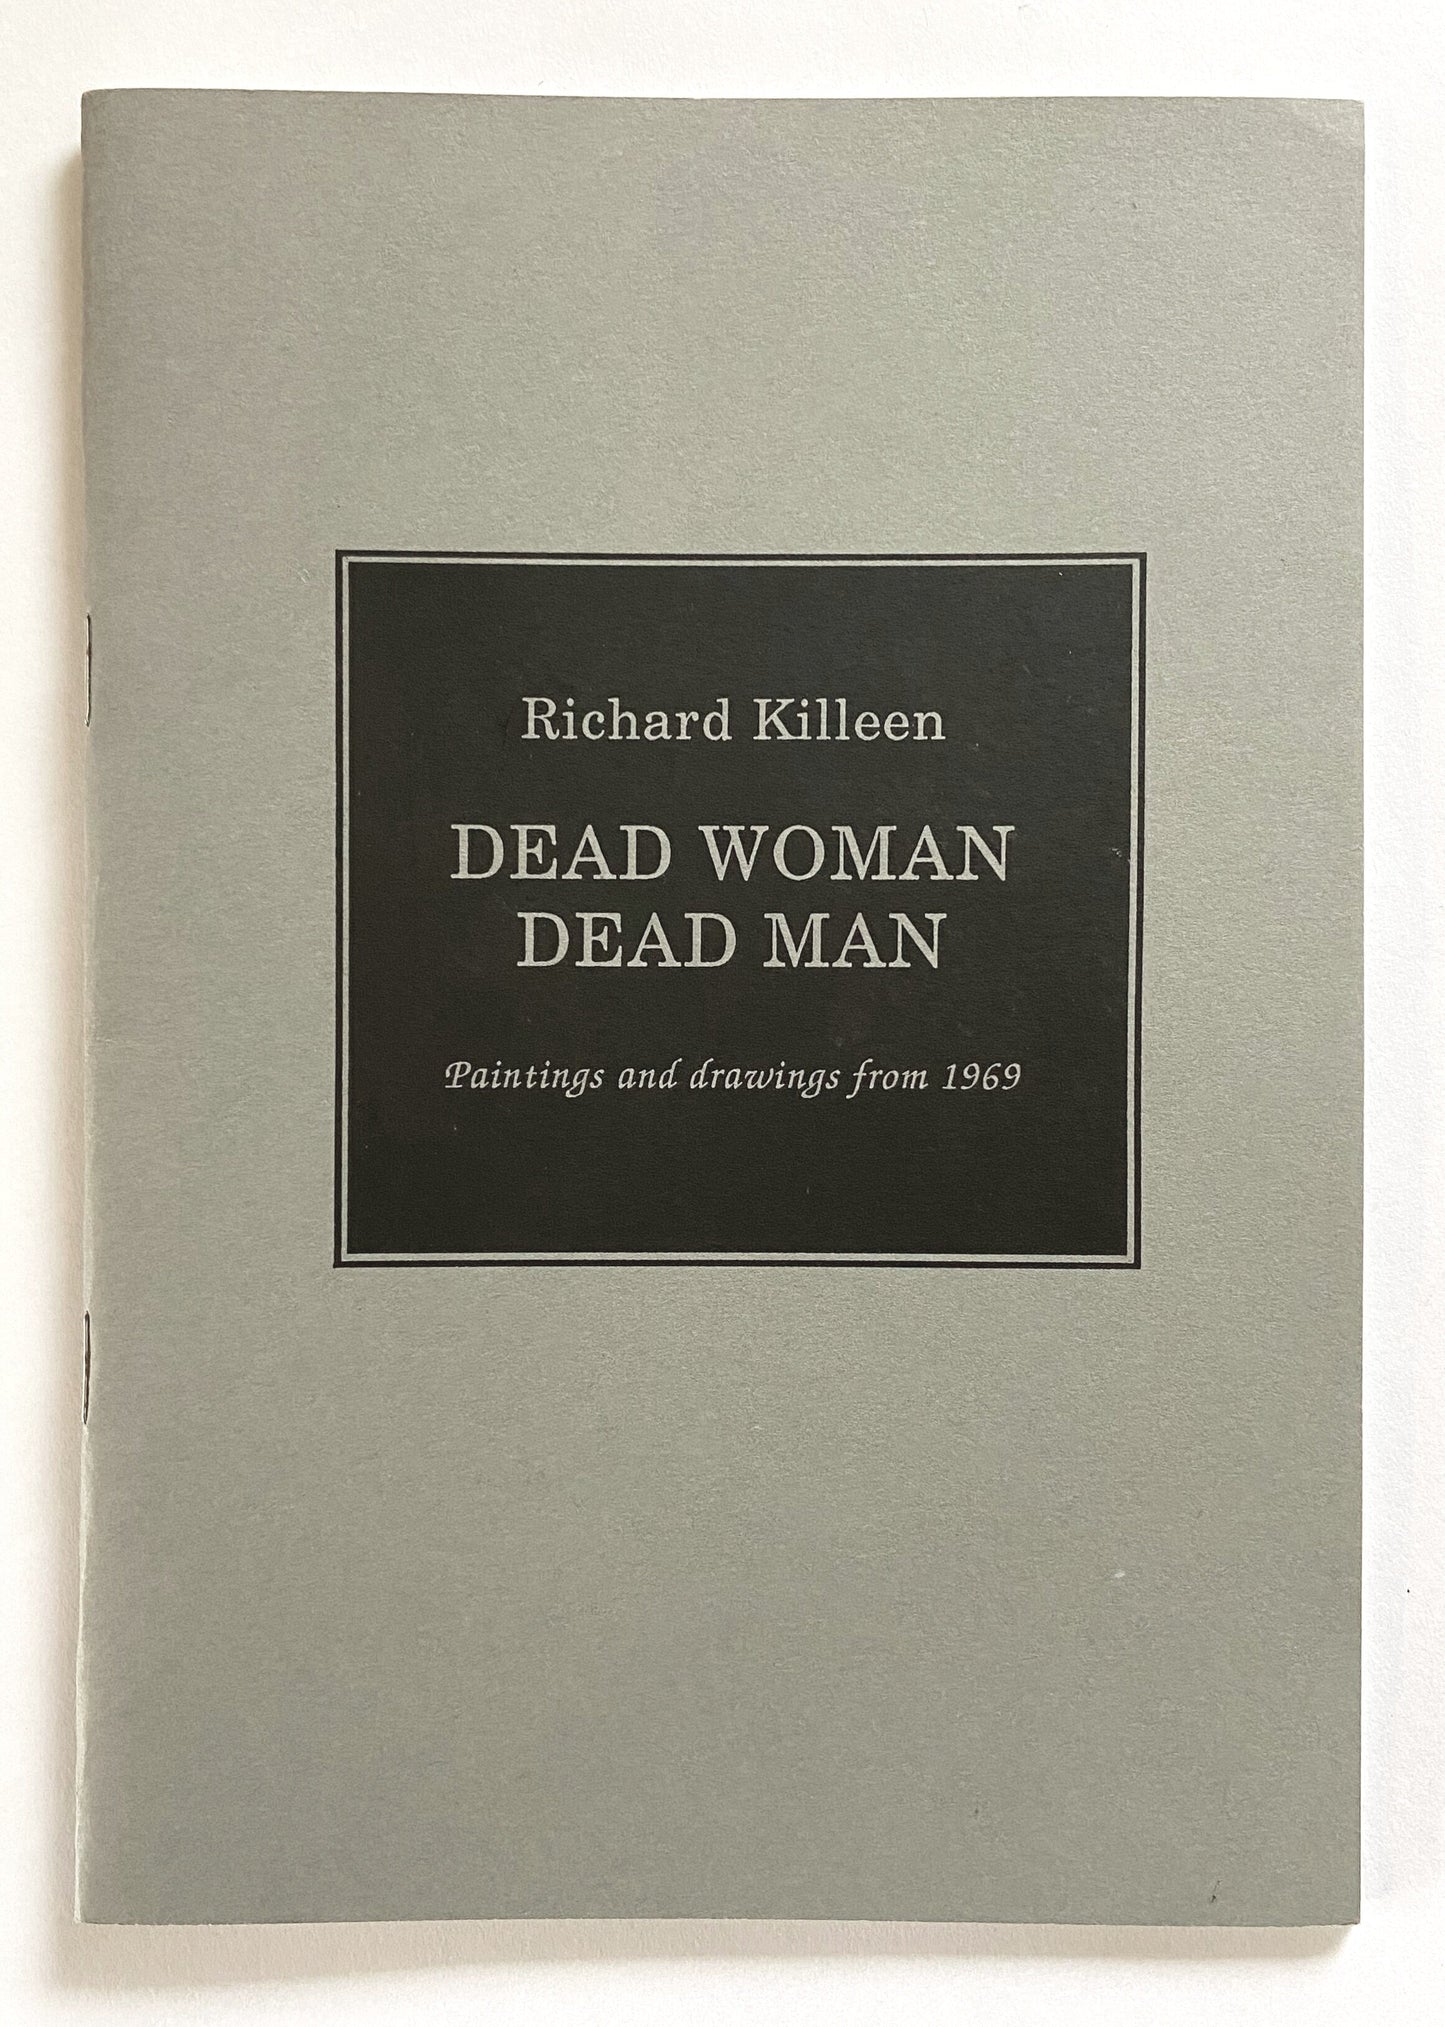 Dead Woman Dead Man - Richard Killeen